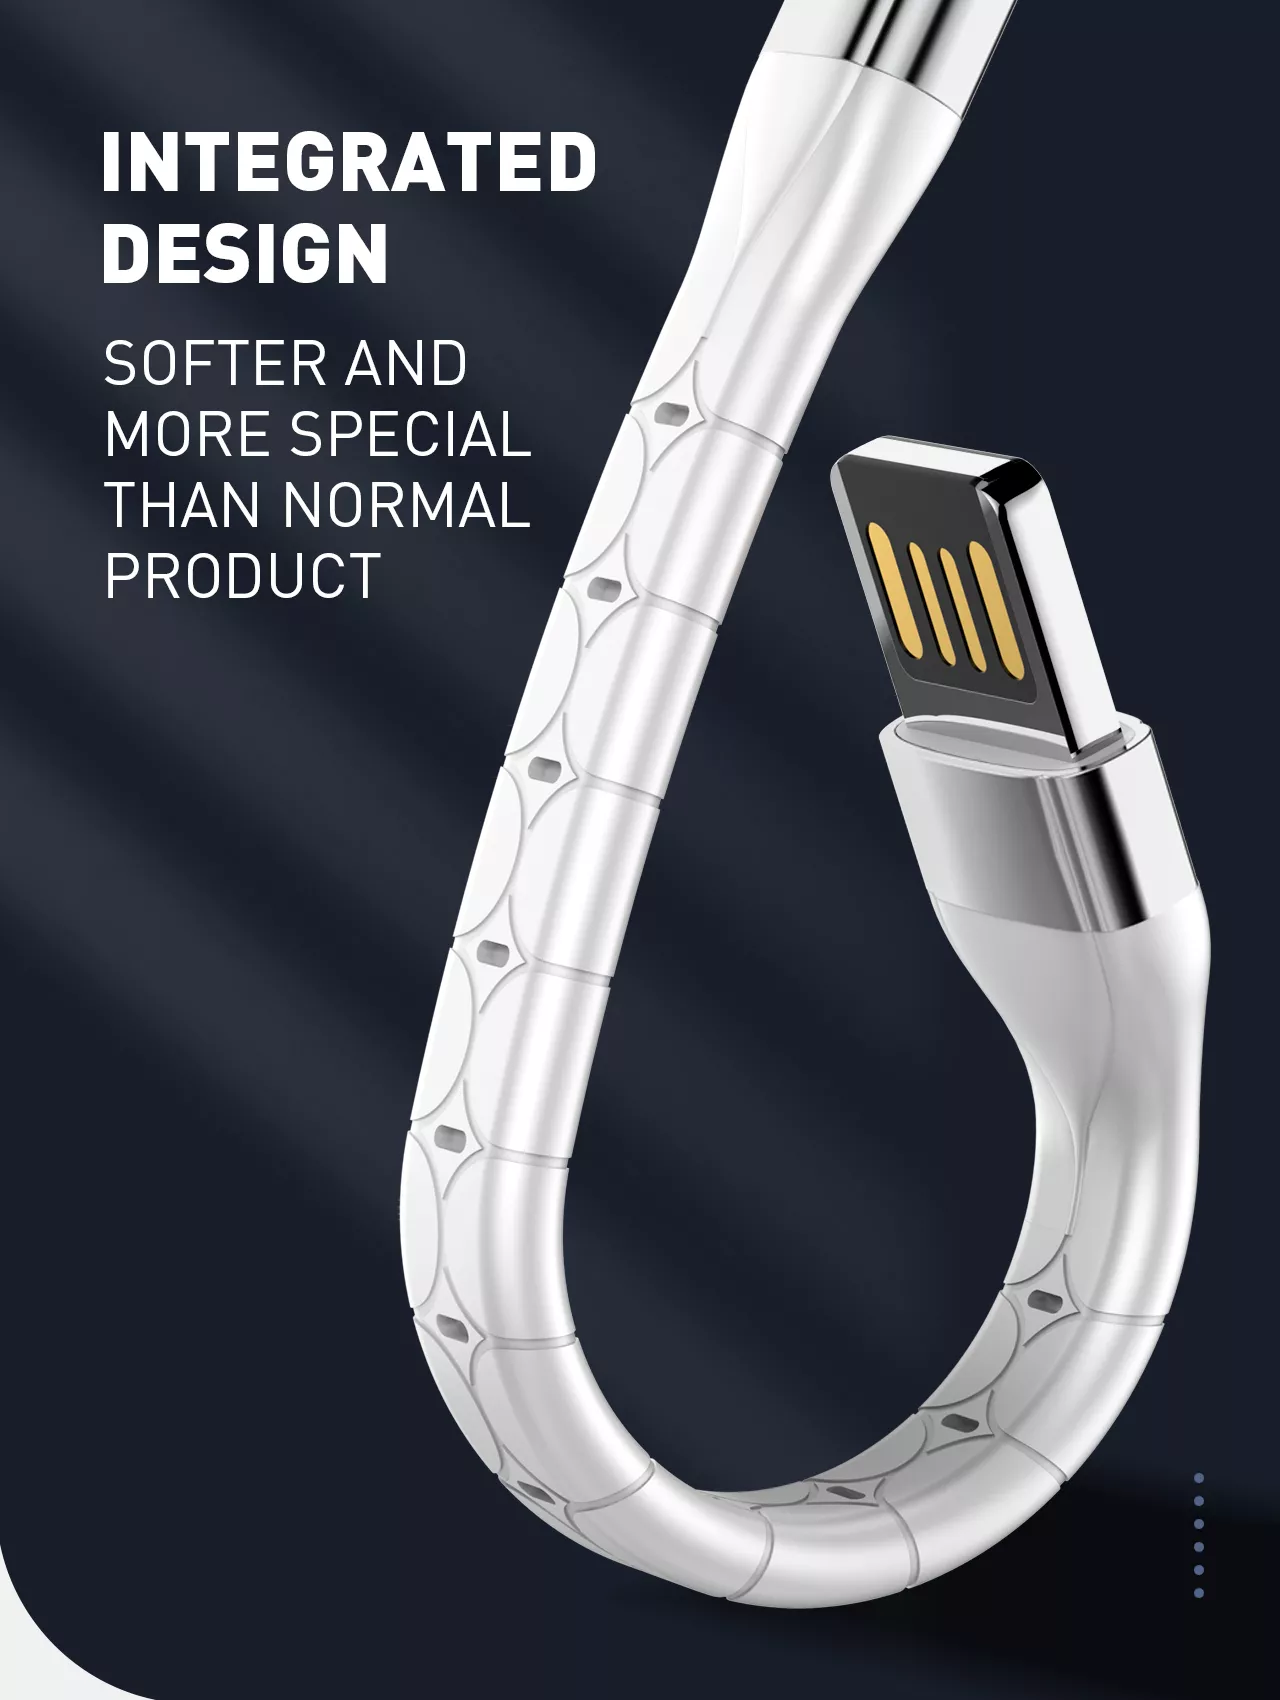 Kabel do szybkiego ładowania USB-A / micro-USB 15cm biały LS50M